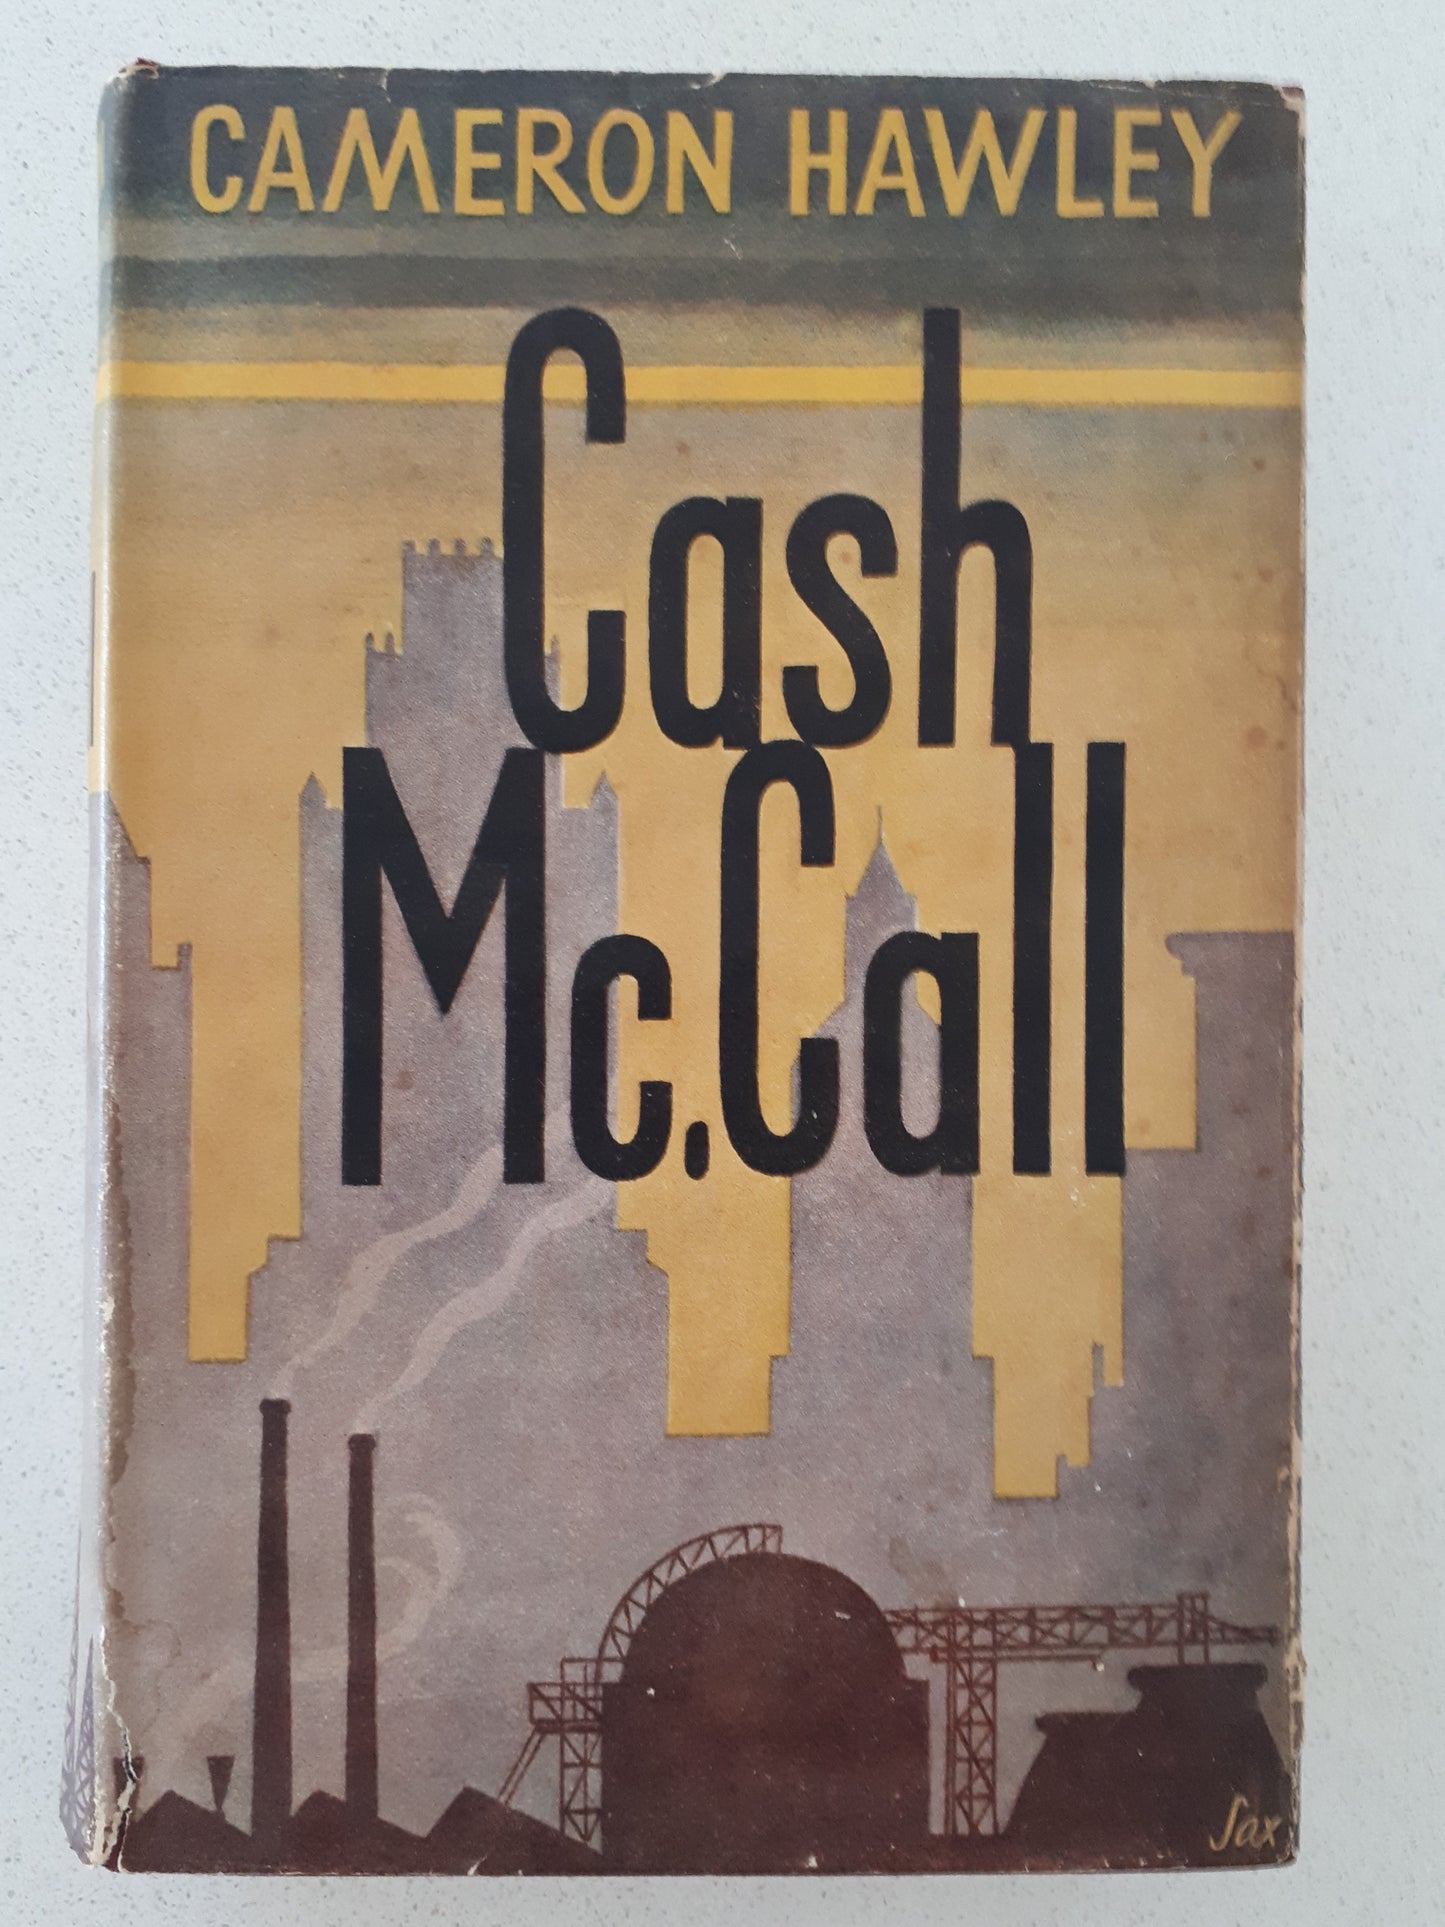 Cash McCall by Cameron Hawley